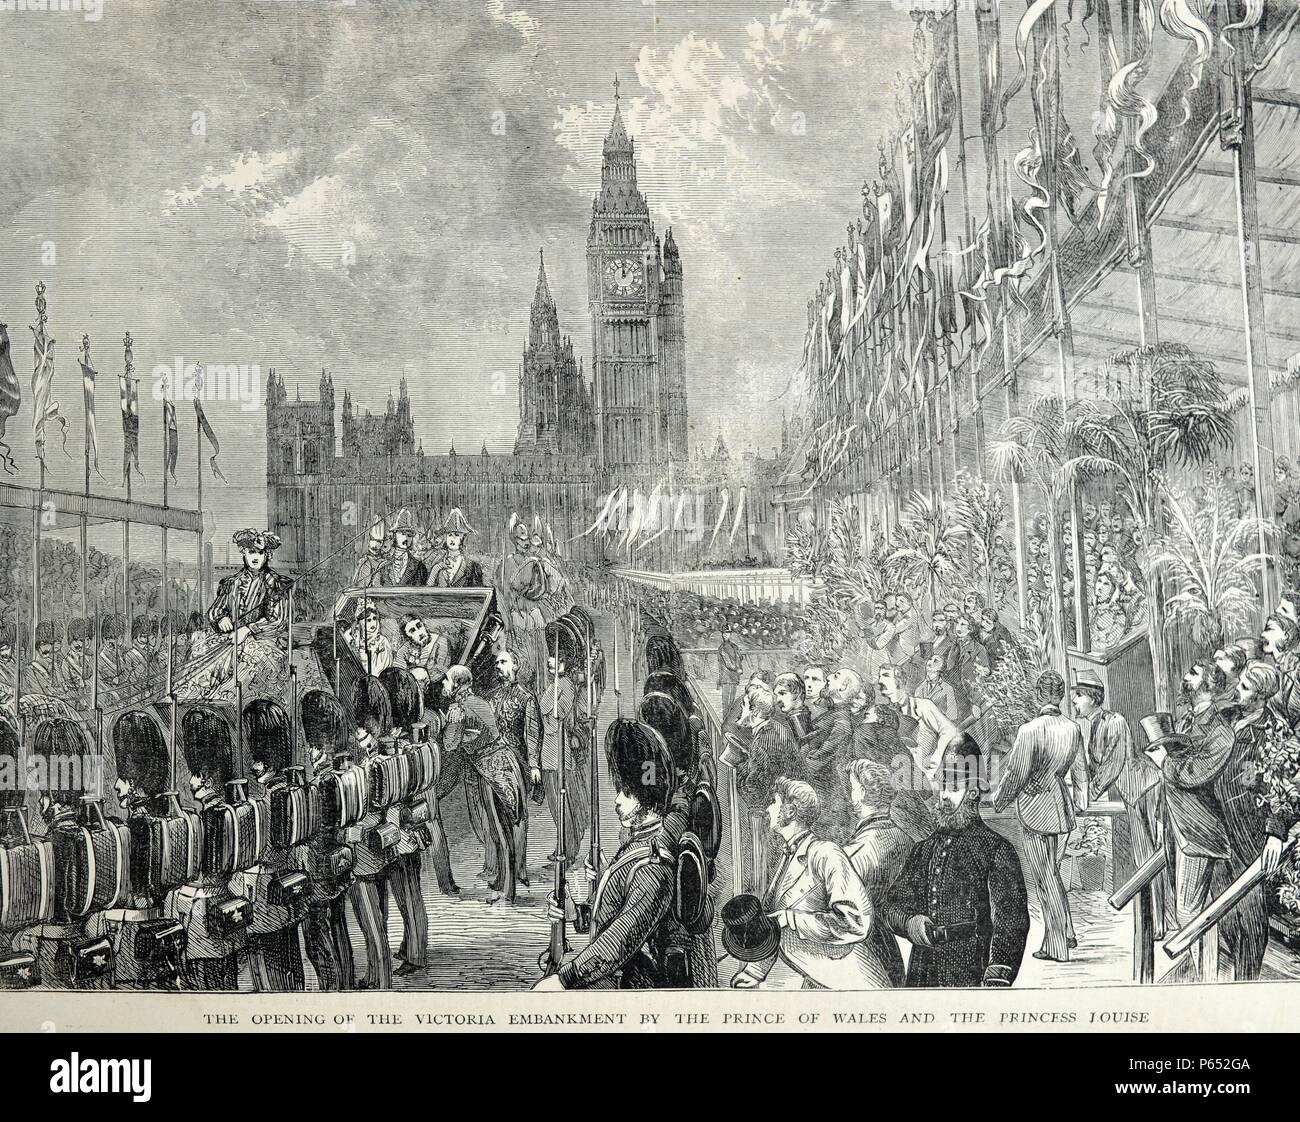 Gravure de l'ouverture de la Victoria Embankment par le Prince de Galles (Edward VII (1841- 1910) et la princesse Louise (Louise Victoria Alexandra Dagmar (1867 - 1931). Datée 1870 Banque D'Images